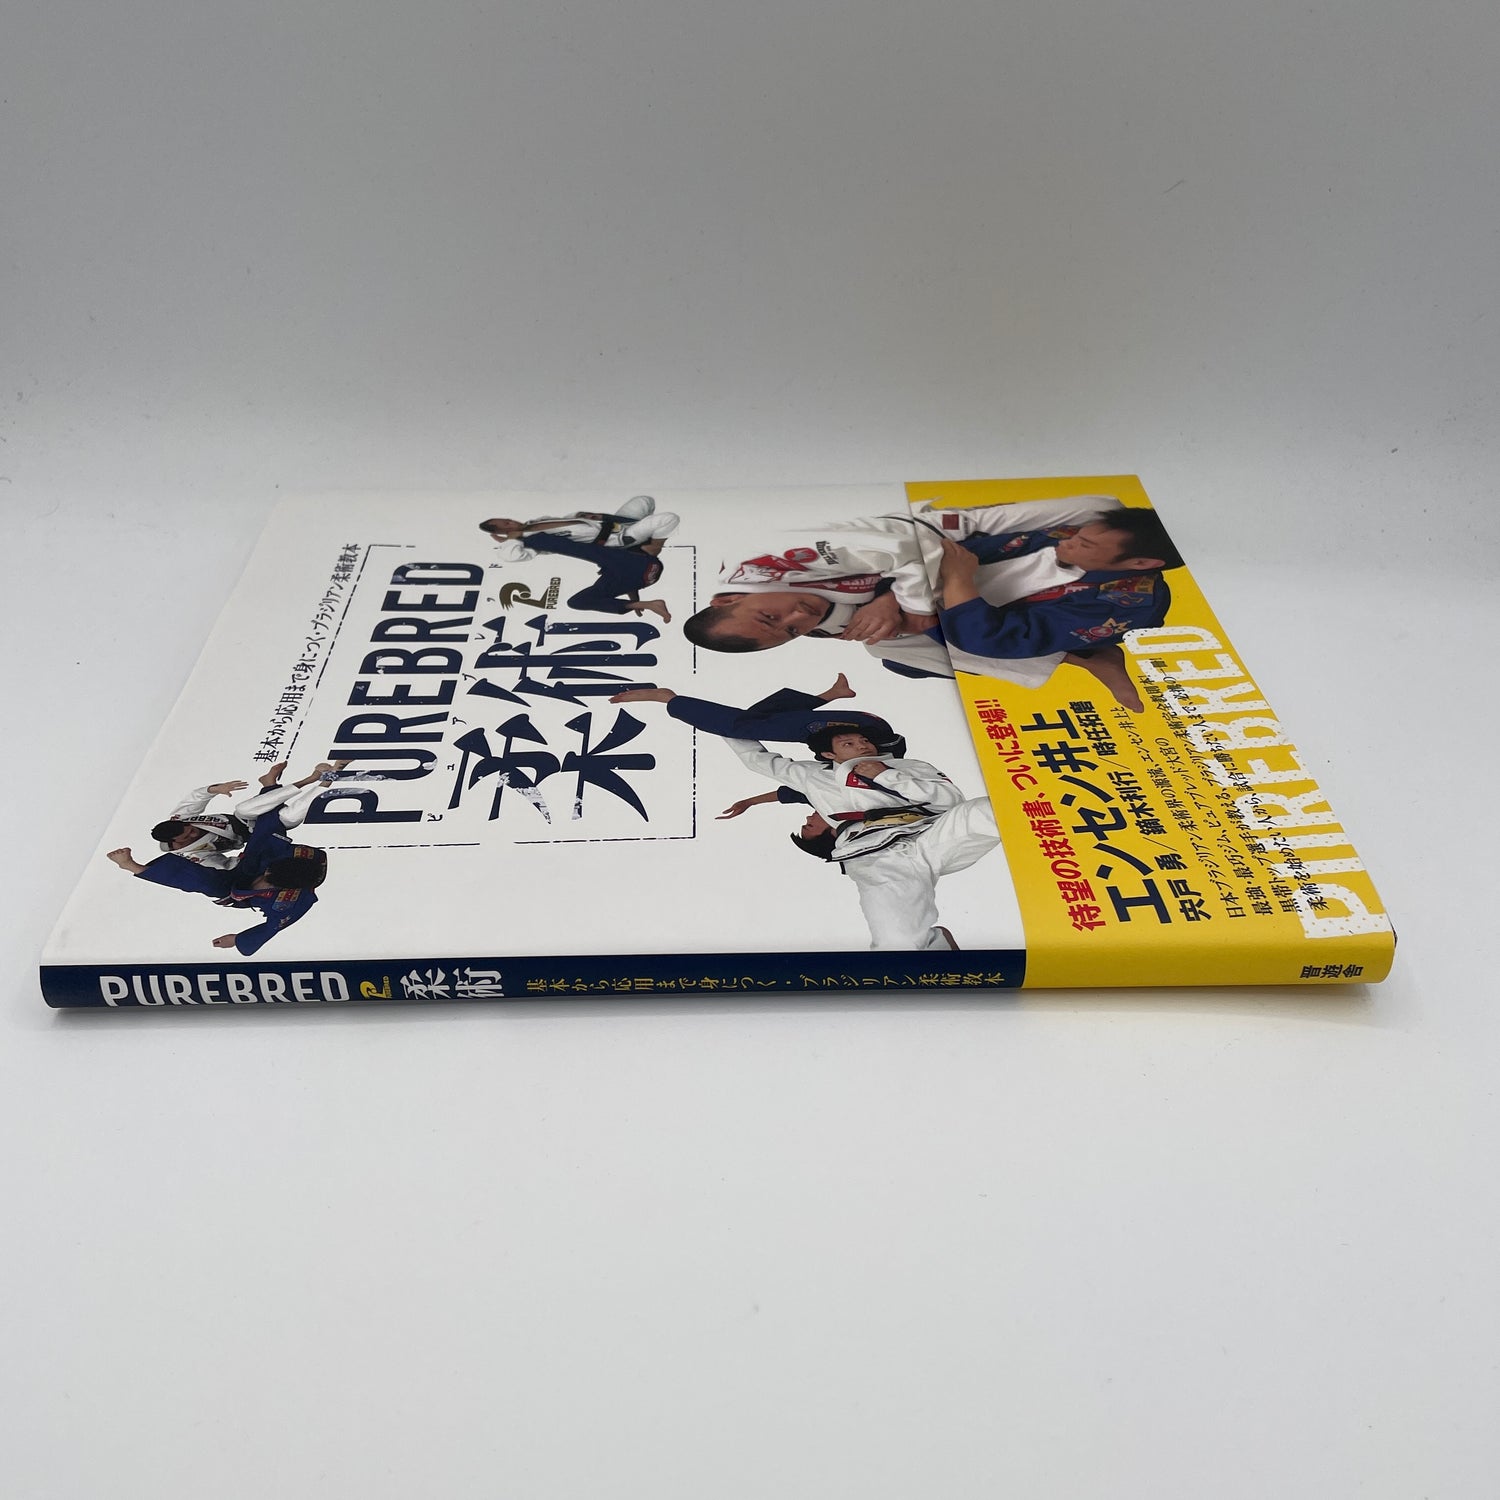 Purebred Jiu-jitsu Book by Enson Inoue